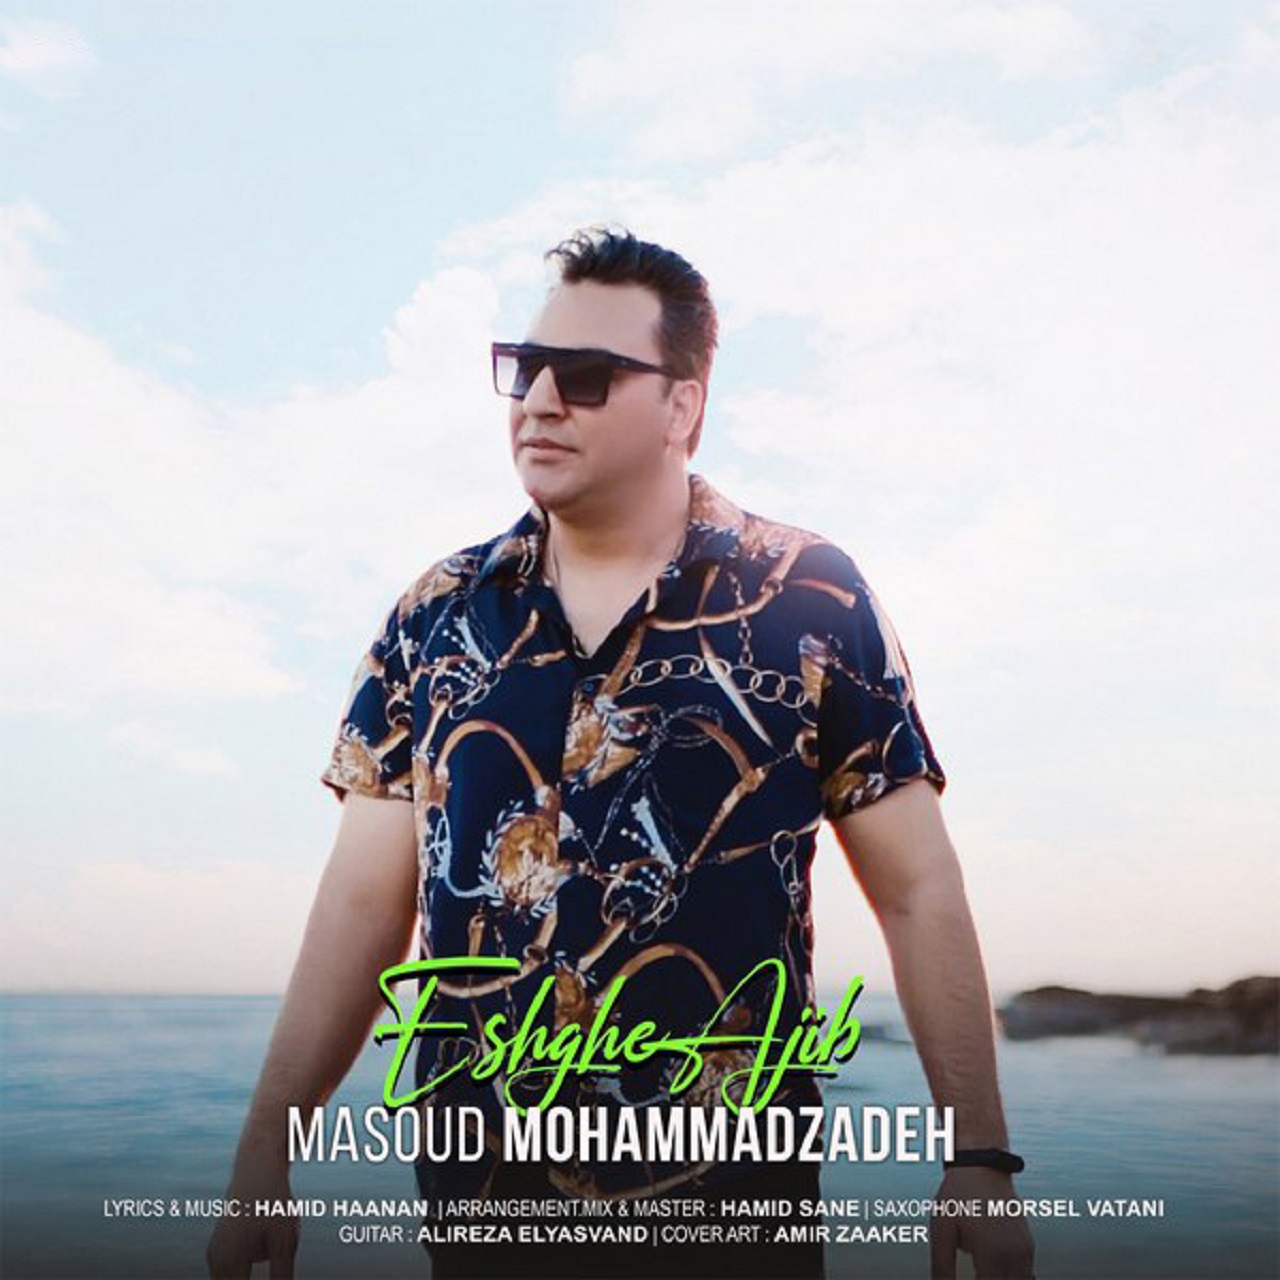  دانلود آهنگ جدید مسعود محمدزاده - عشق عجیب | Download New Music By Masoud Mohammadzadeh - Eshgh Ajib